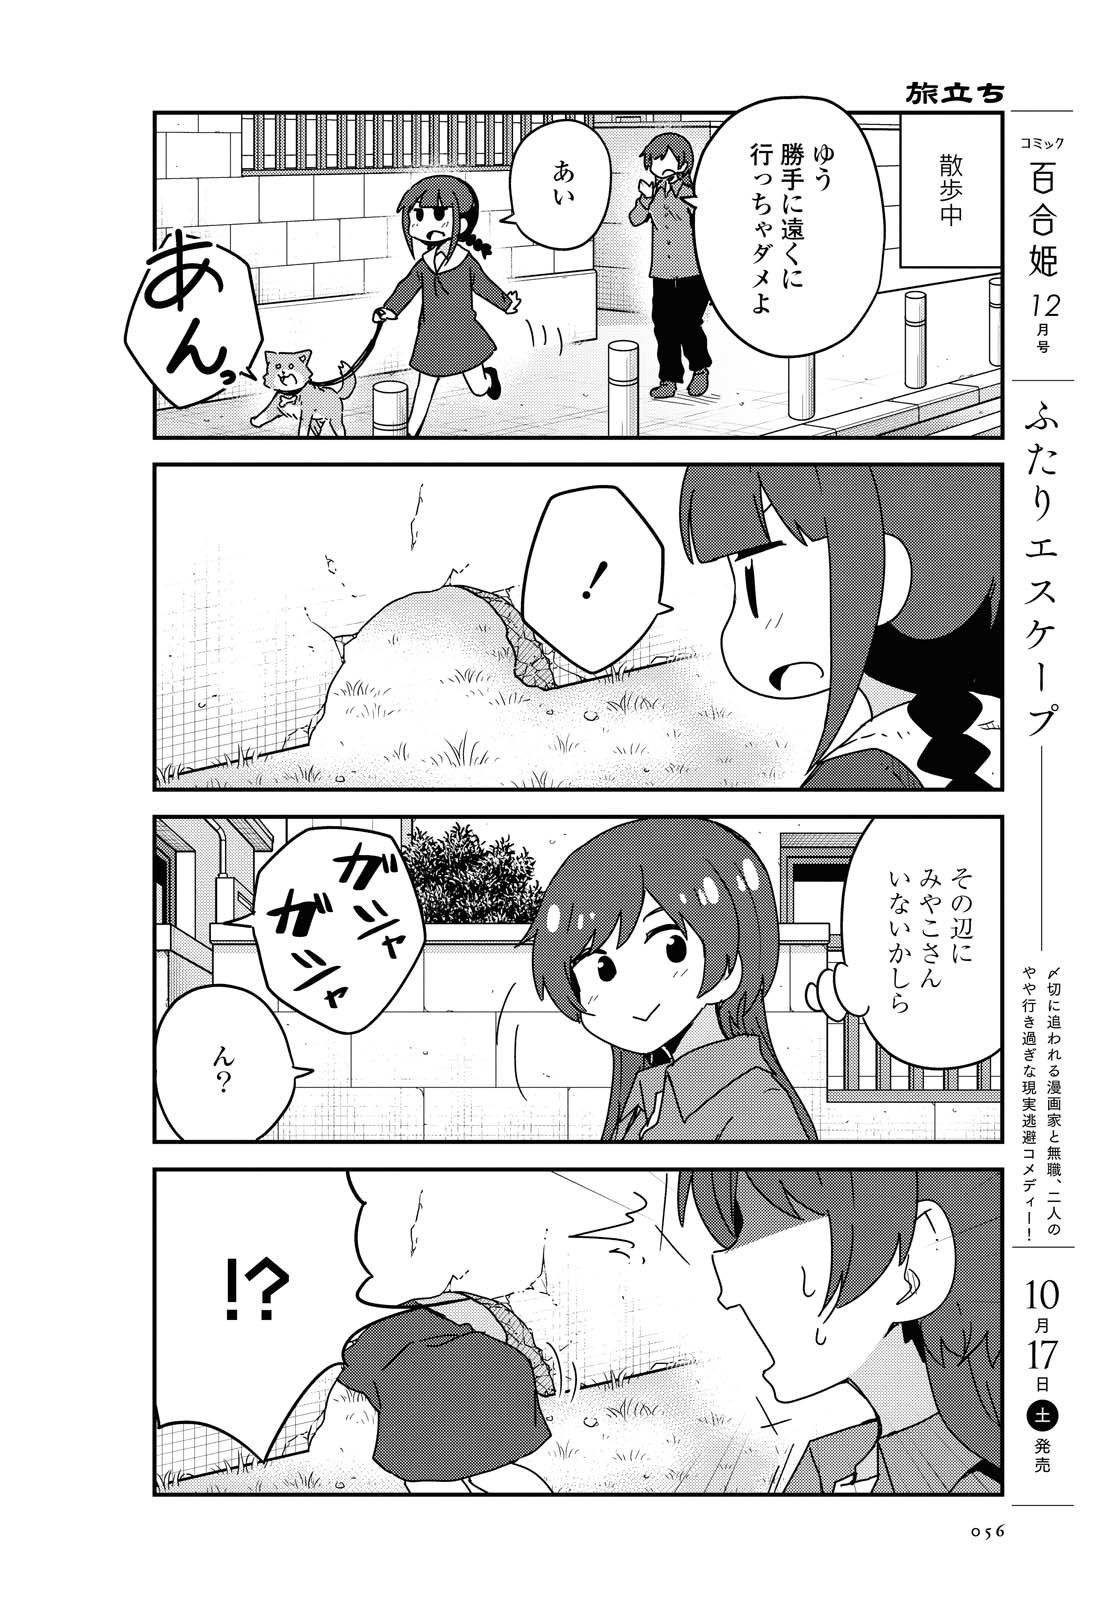 Watashi ni Tenshi ga Maiorita! - Chapter 71 - Page 2